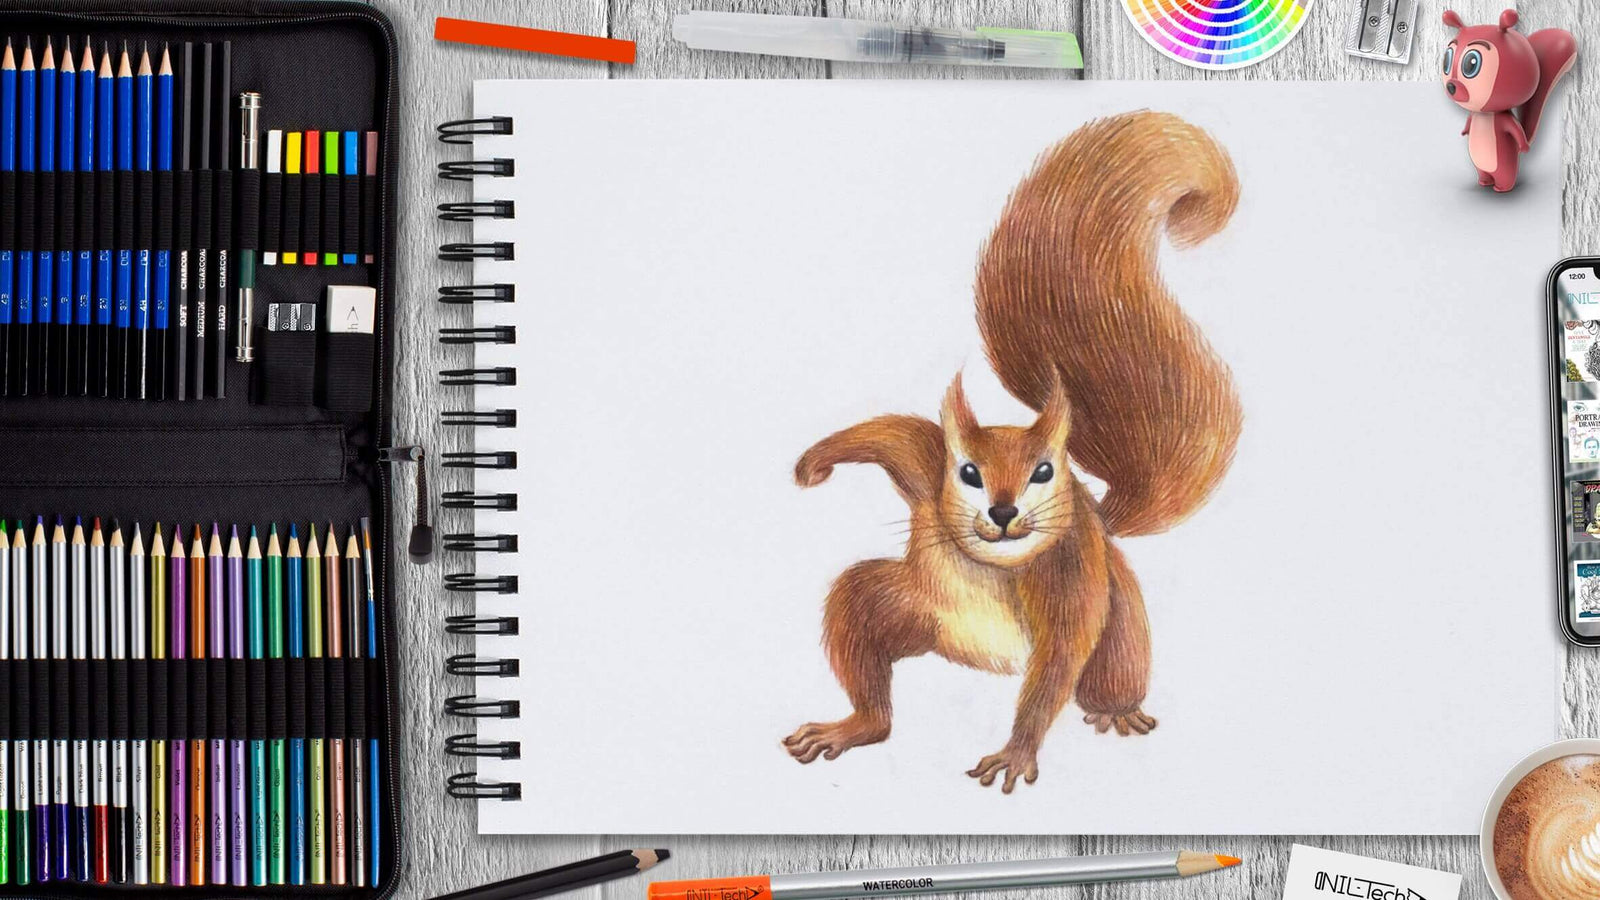 Squirrel Color Pencil Drawing | See Fullimage: Squirrel Colo… | Flickr